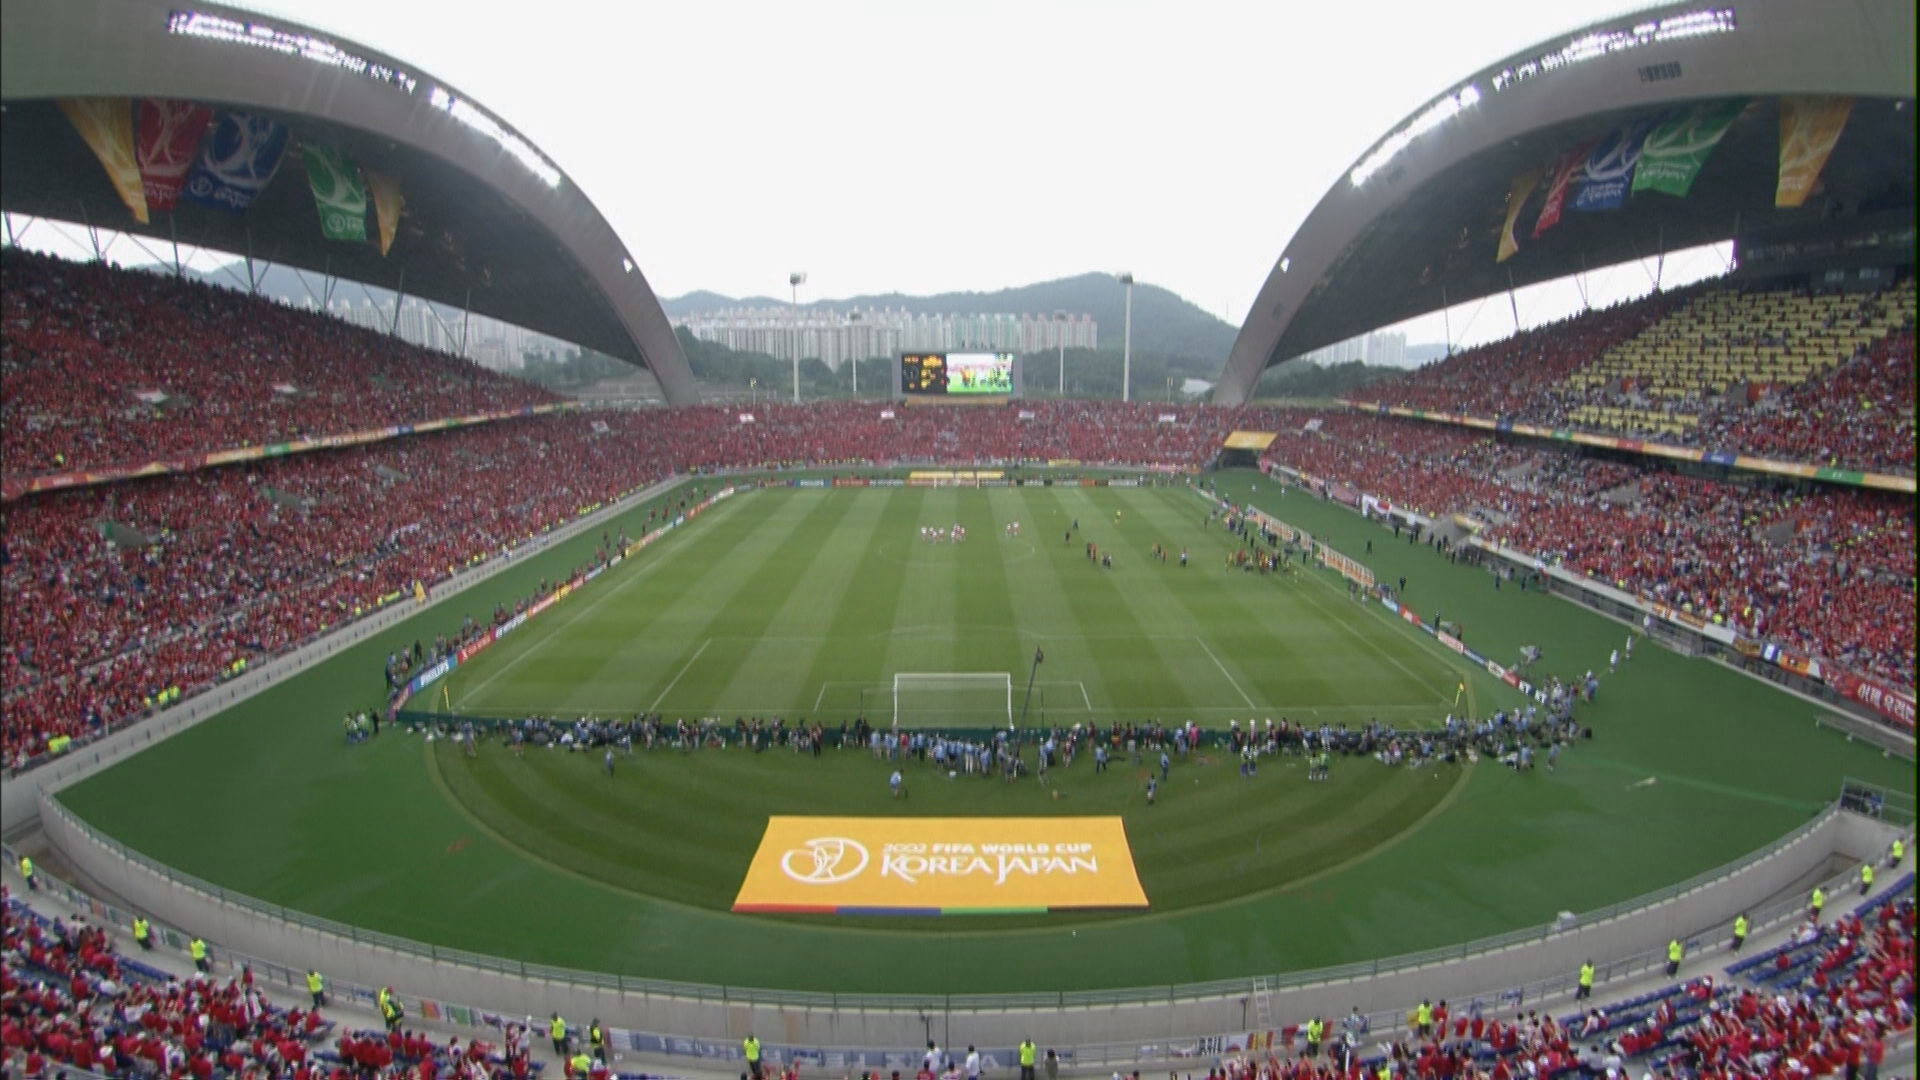 2002년 월드컵 8강전이 열렸던 광주월드컵경기장의 모습